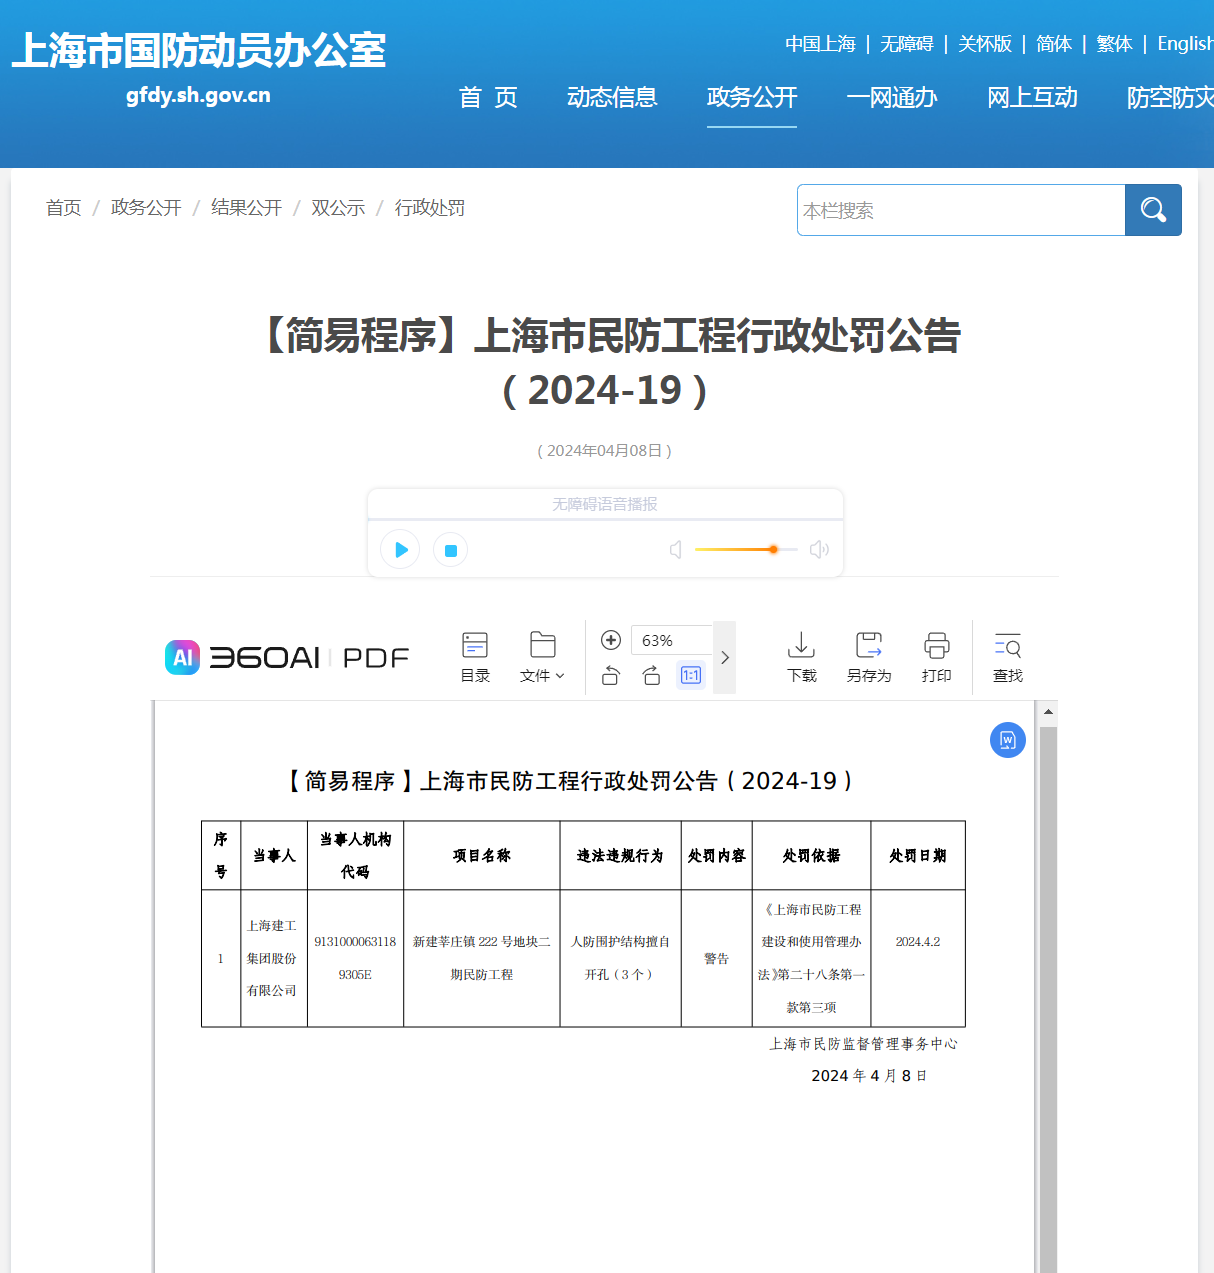 上海建工集团股份有限公司因违反《上海市民防工程建设和使用管理办法